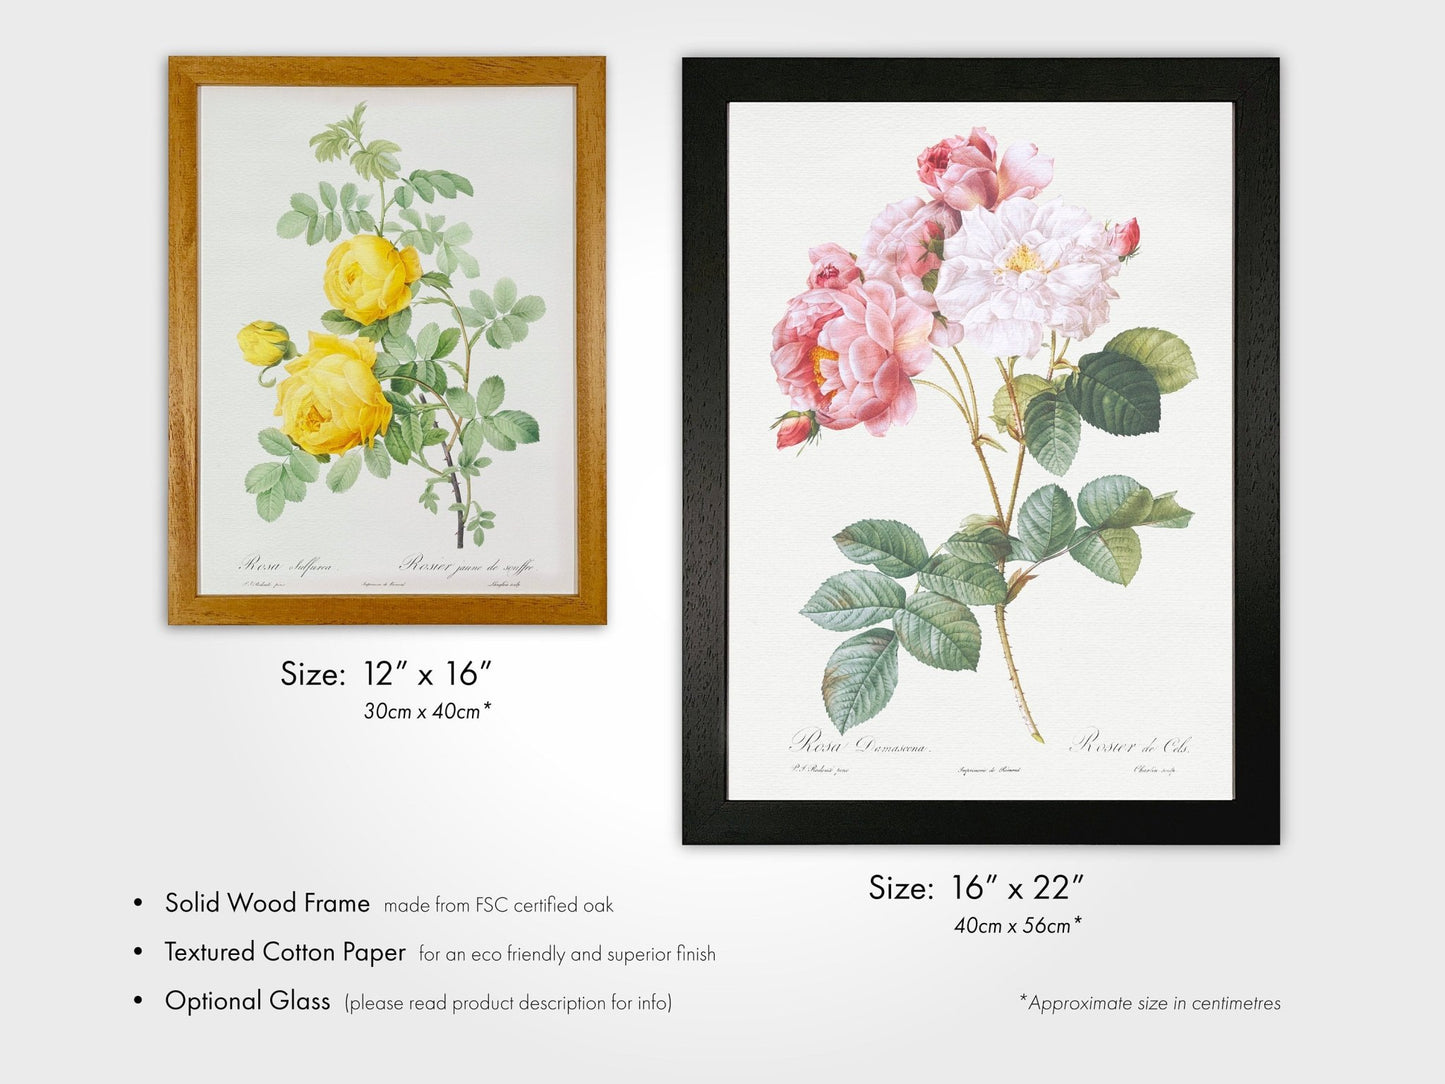 Lilac by Pierre-Joseph Redouté (Raphael of Flowers) - Pathos Studio - Art Prints